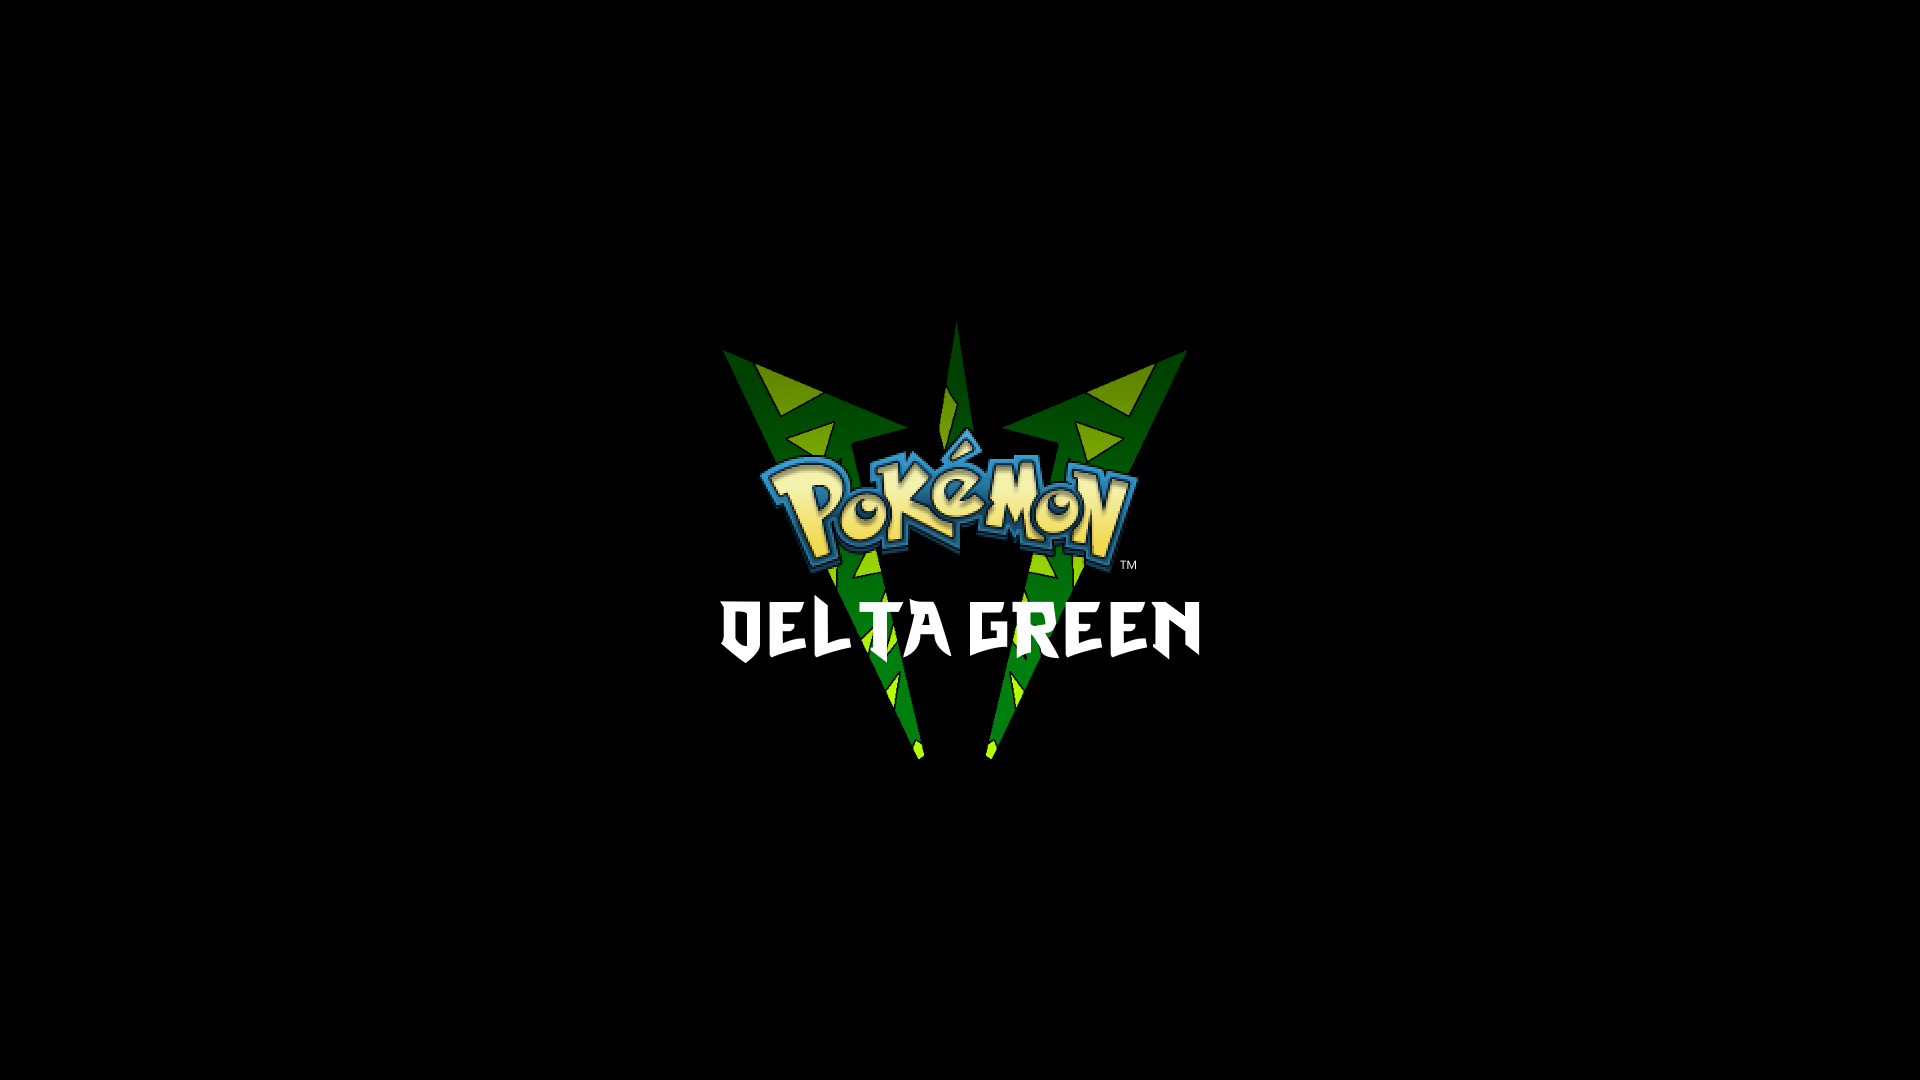 Pokémon Delta Green